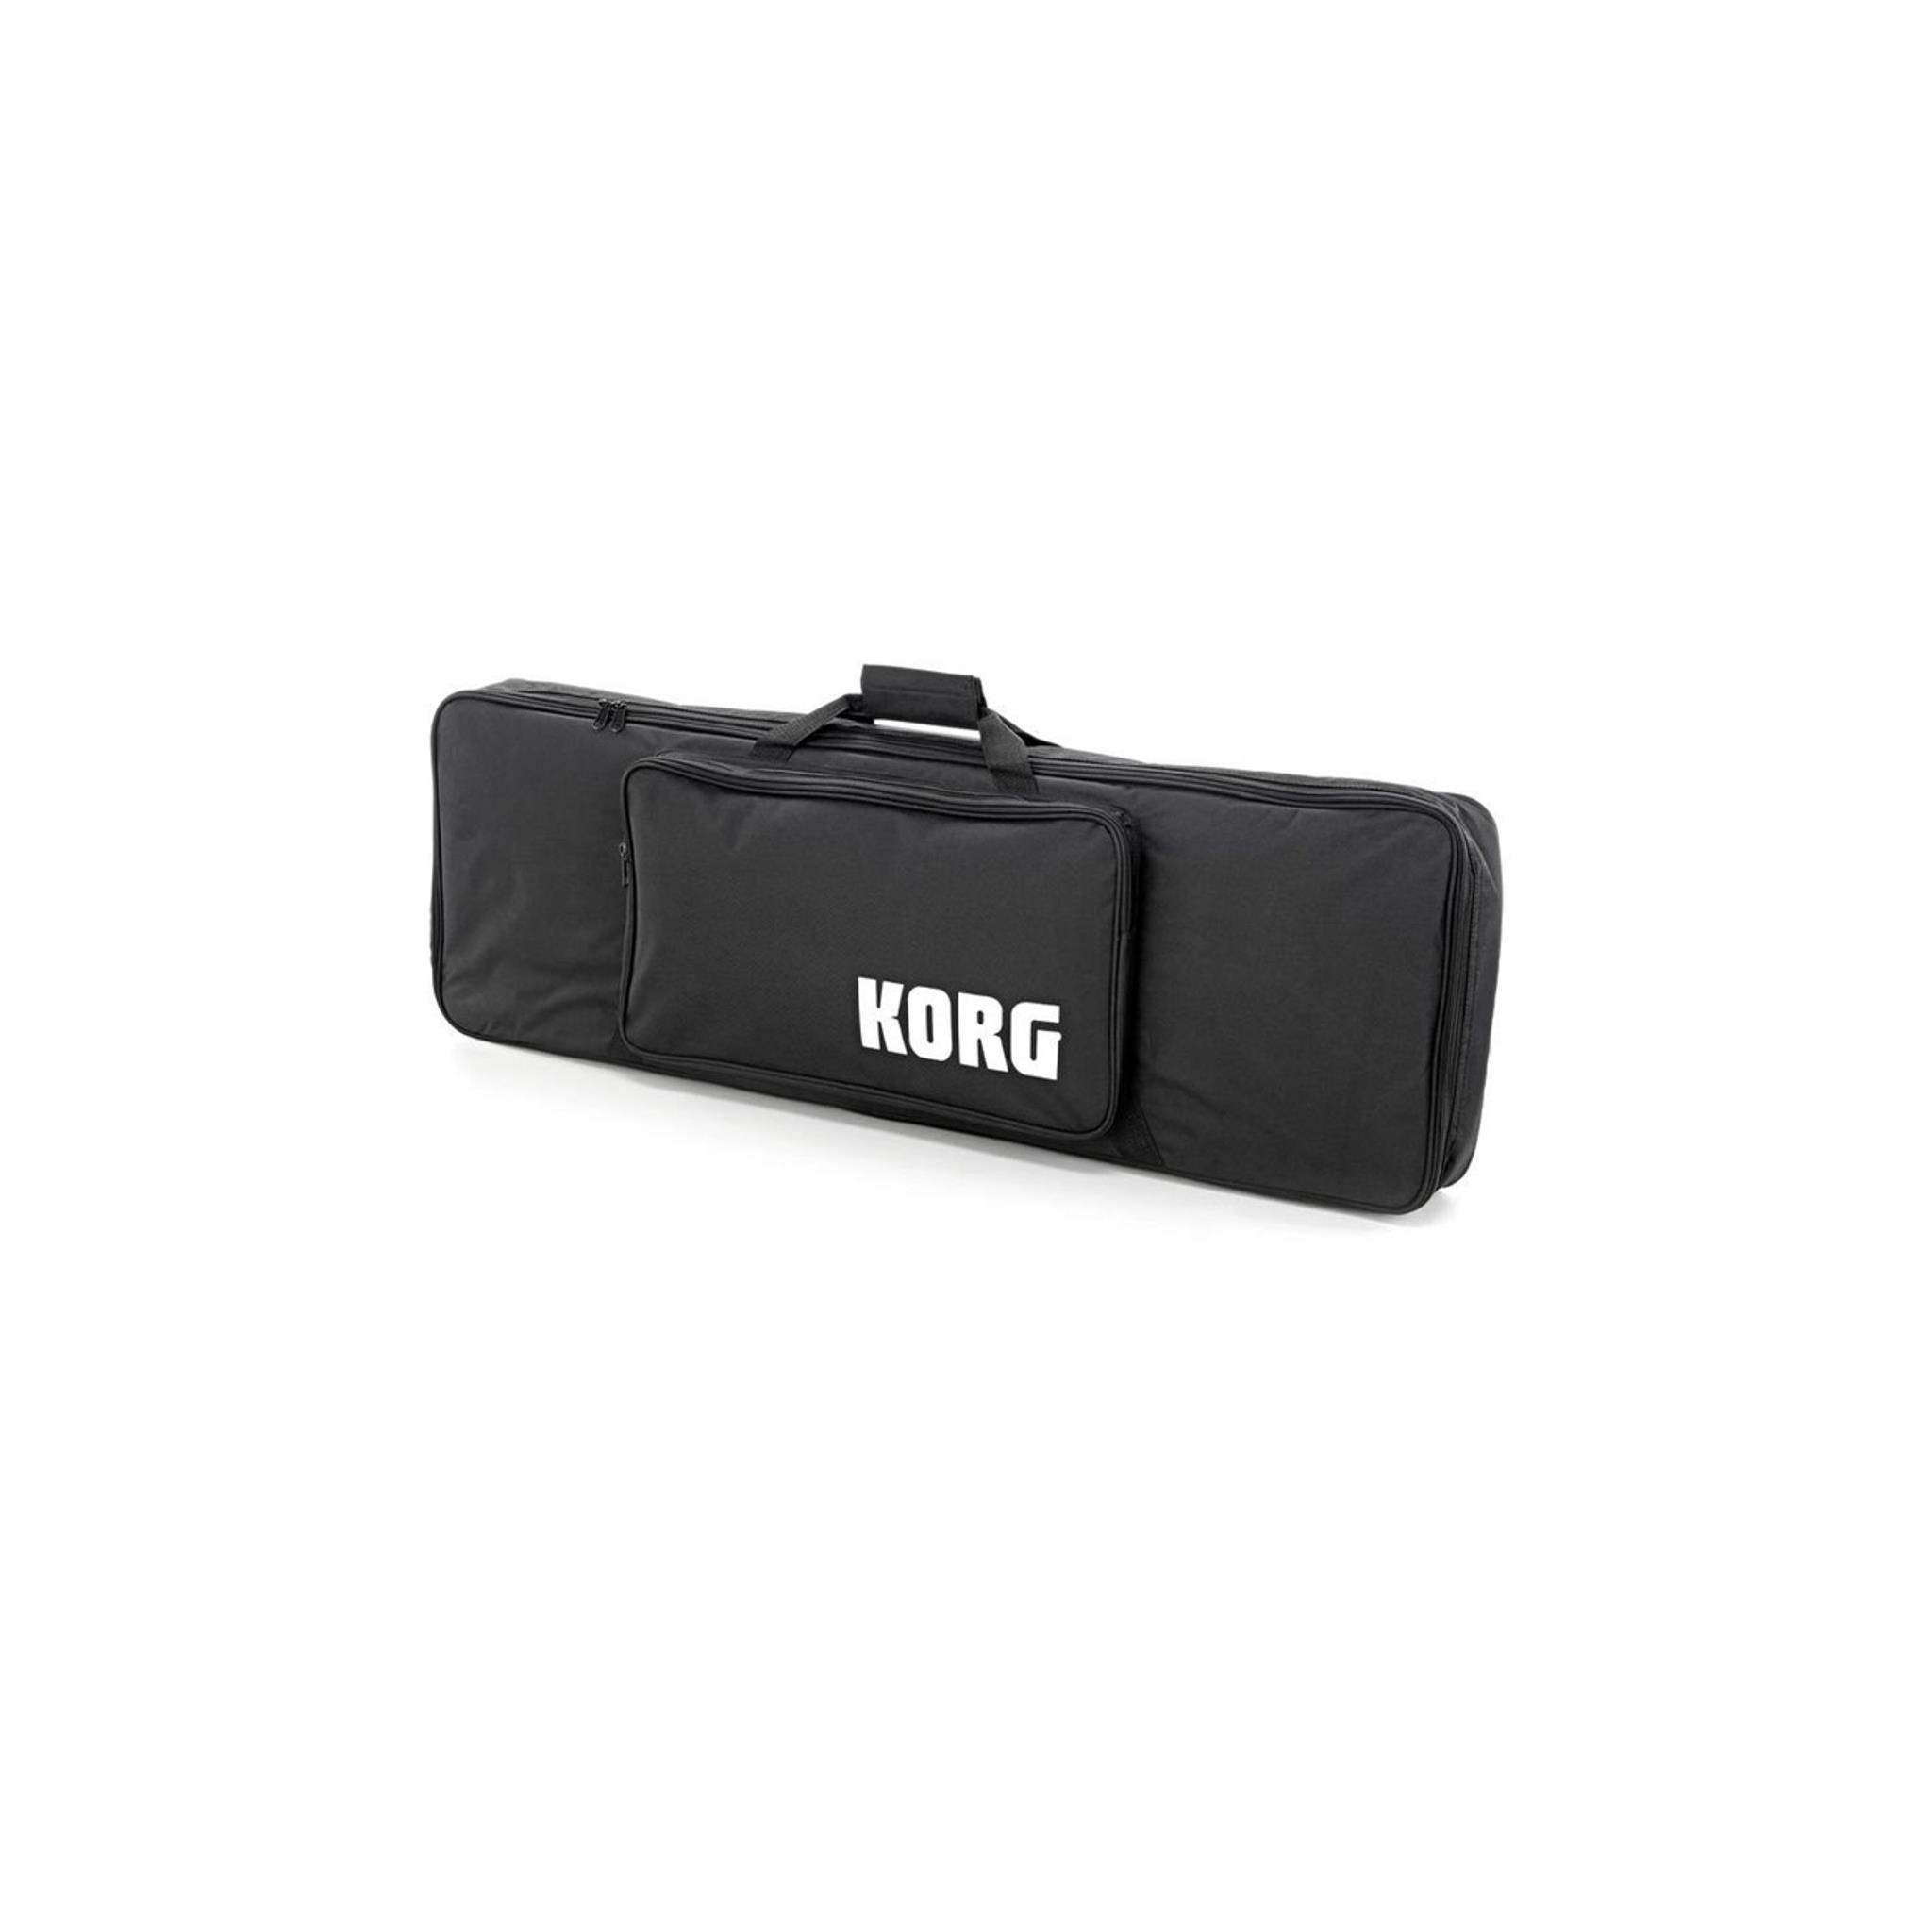 Korg Soft Case for KROSS261